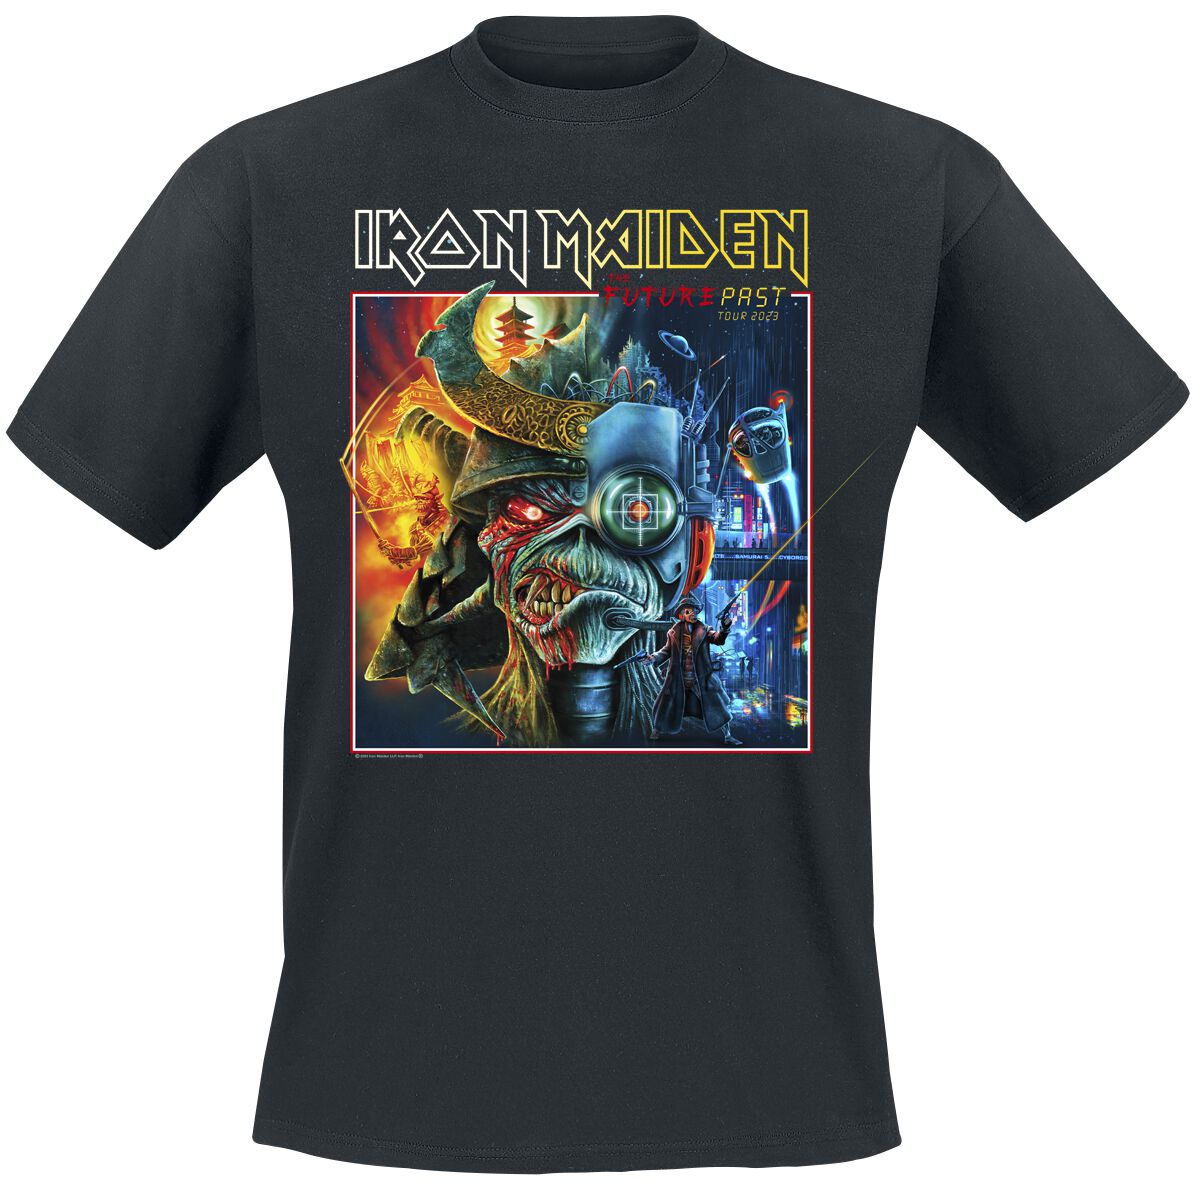 Iron Maiden T-Shirt - The Future Past Tour Art 2023 Square - S bis 4XL - für Männer - Größe 4XL - schwarz  - Lizenziertes Merchandise!